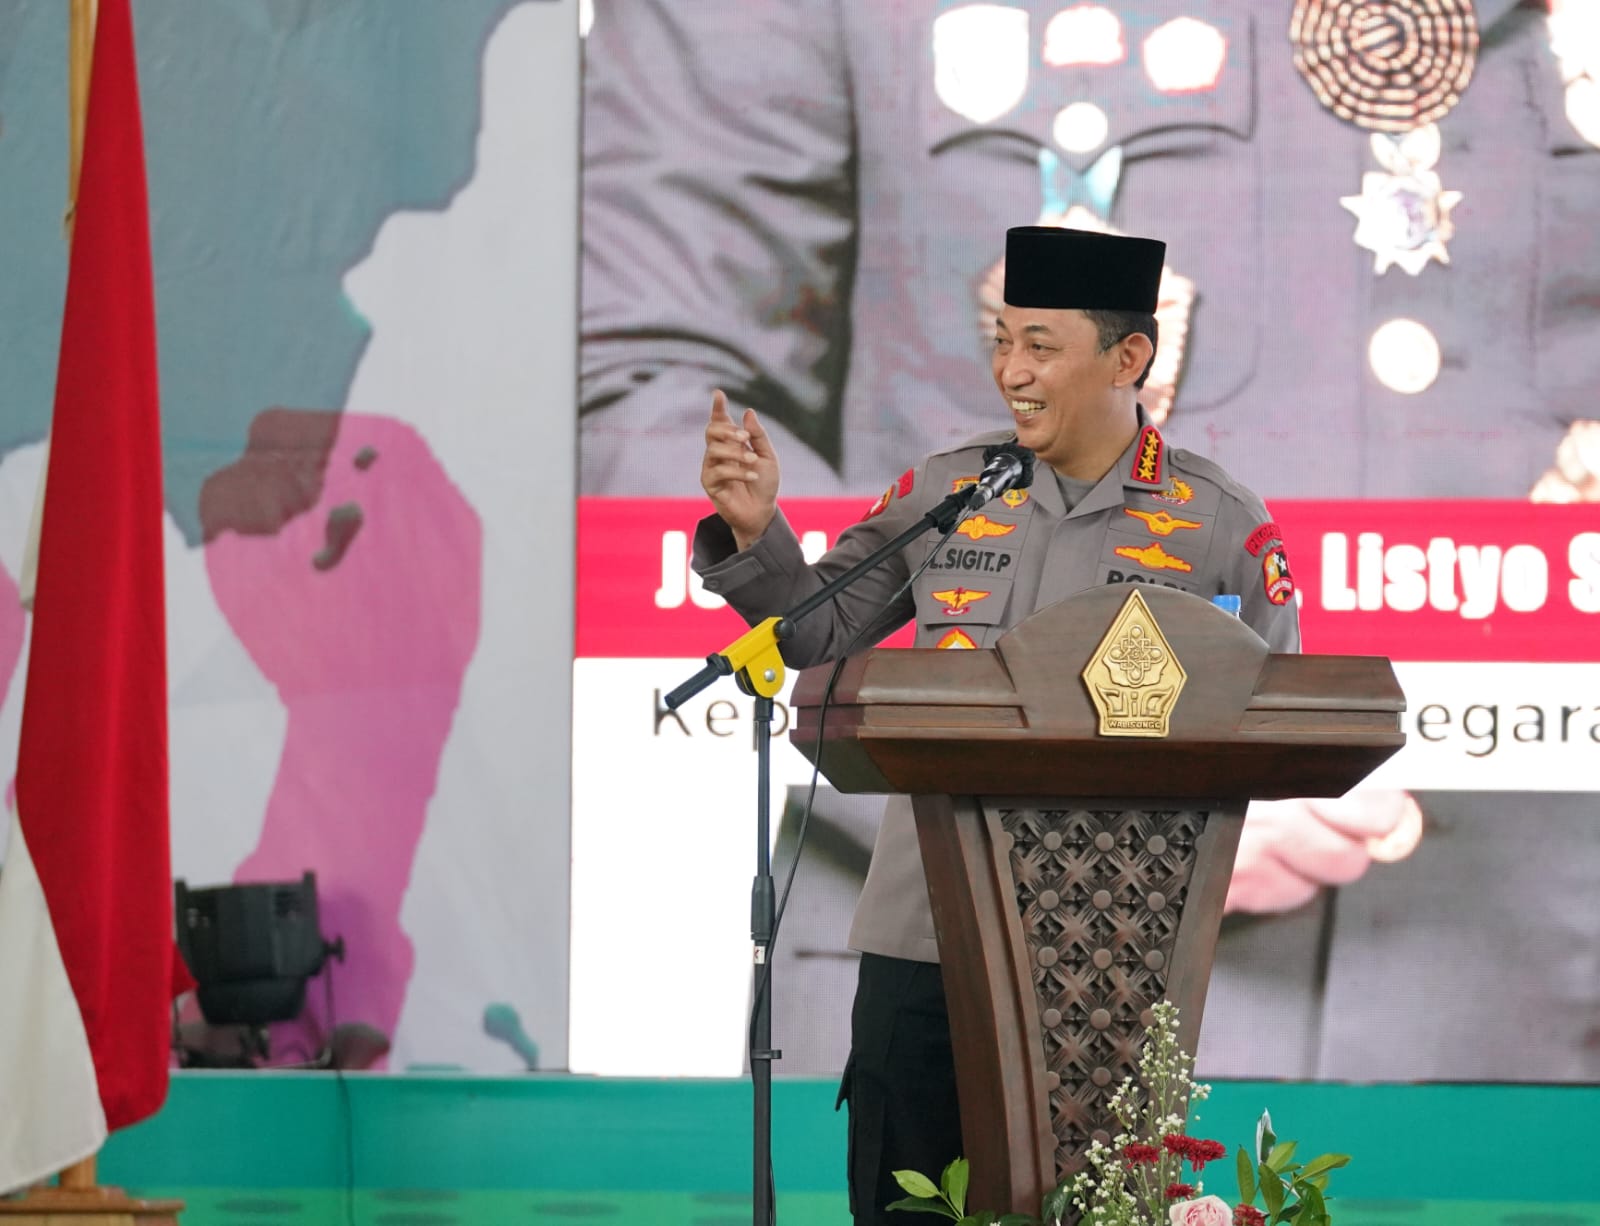 Orasi Kebangsaan Sumpah Pemuda, Kapolri: Persatuan-Kesatuan Wujudkan Indonesia Emas 2045